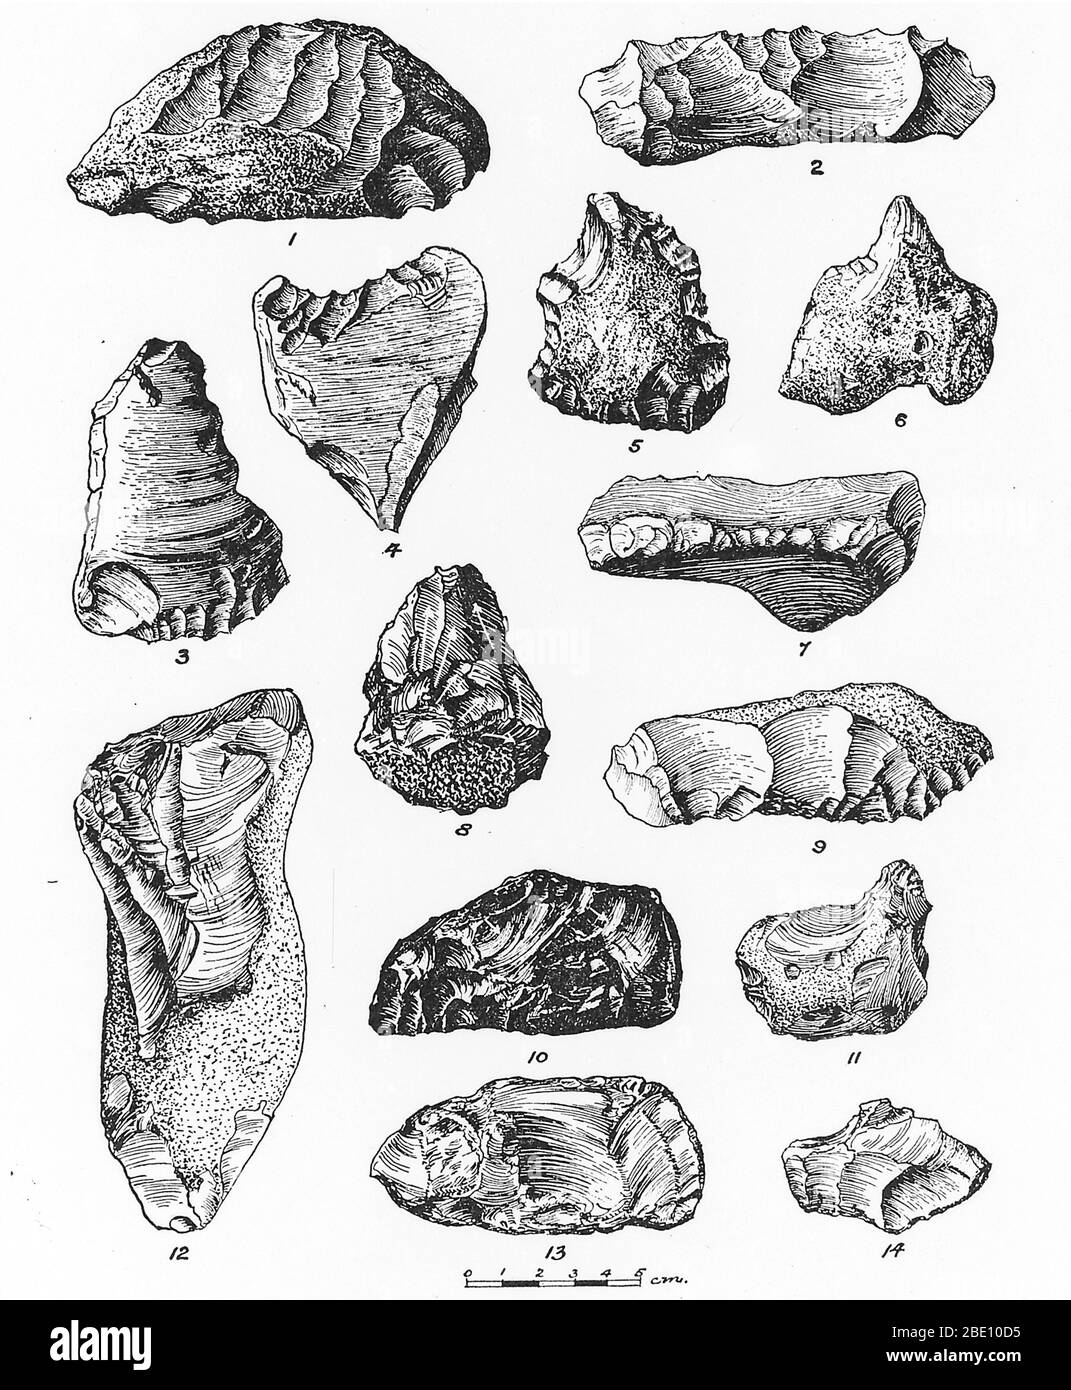 Eolithen aus Frankreich, Belgien und England. Ein Eolith ist ein abgebrochener Flintknoten. Eolithen wurden einst als Artefakte, die frühesten Steinwerkzeuge, gedacht, aber jetzt geglaubt, um natürlich durch geologische Prozesse wie Vergletscherung produziert werden. Stockfoto